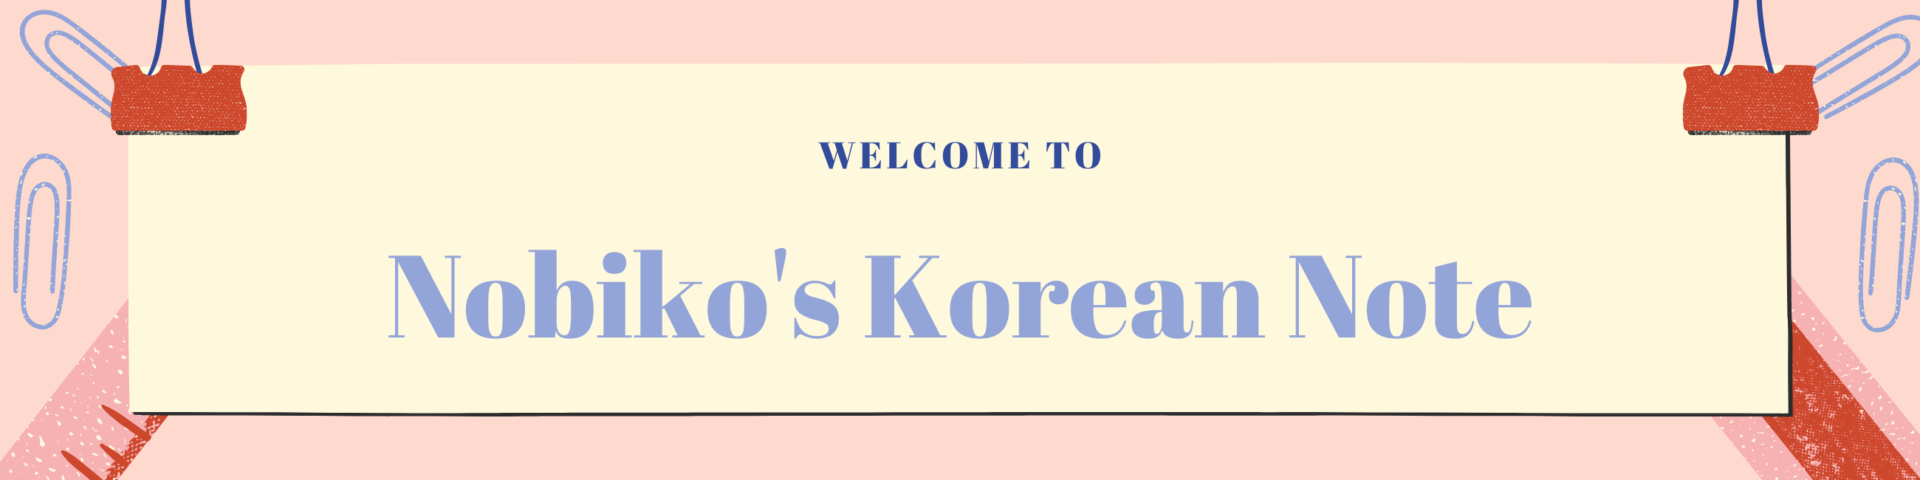 のび子の韓国語学習帳 韓国語上級者を目指そう 韓国語 韓国情報発信中